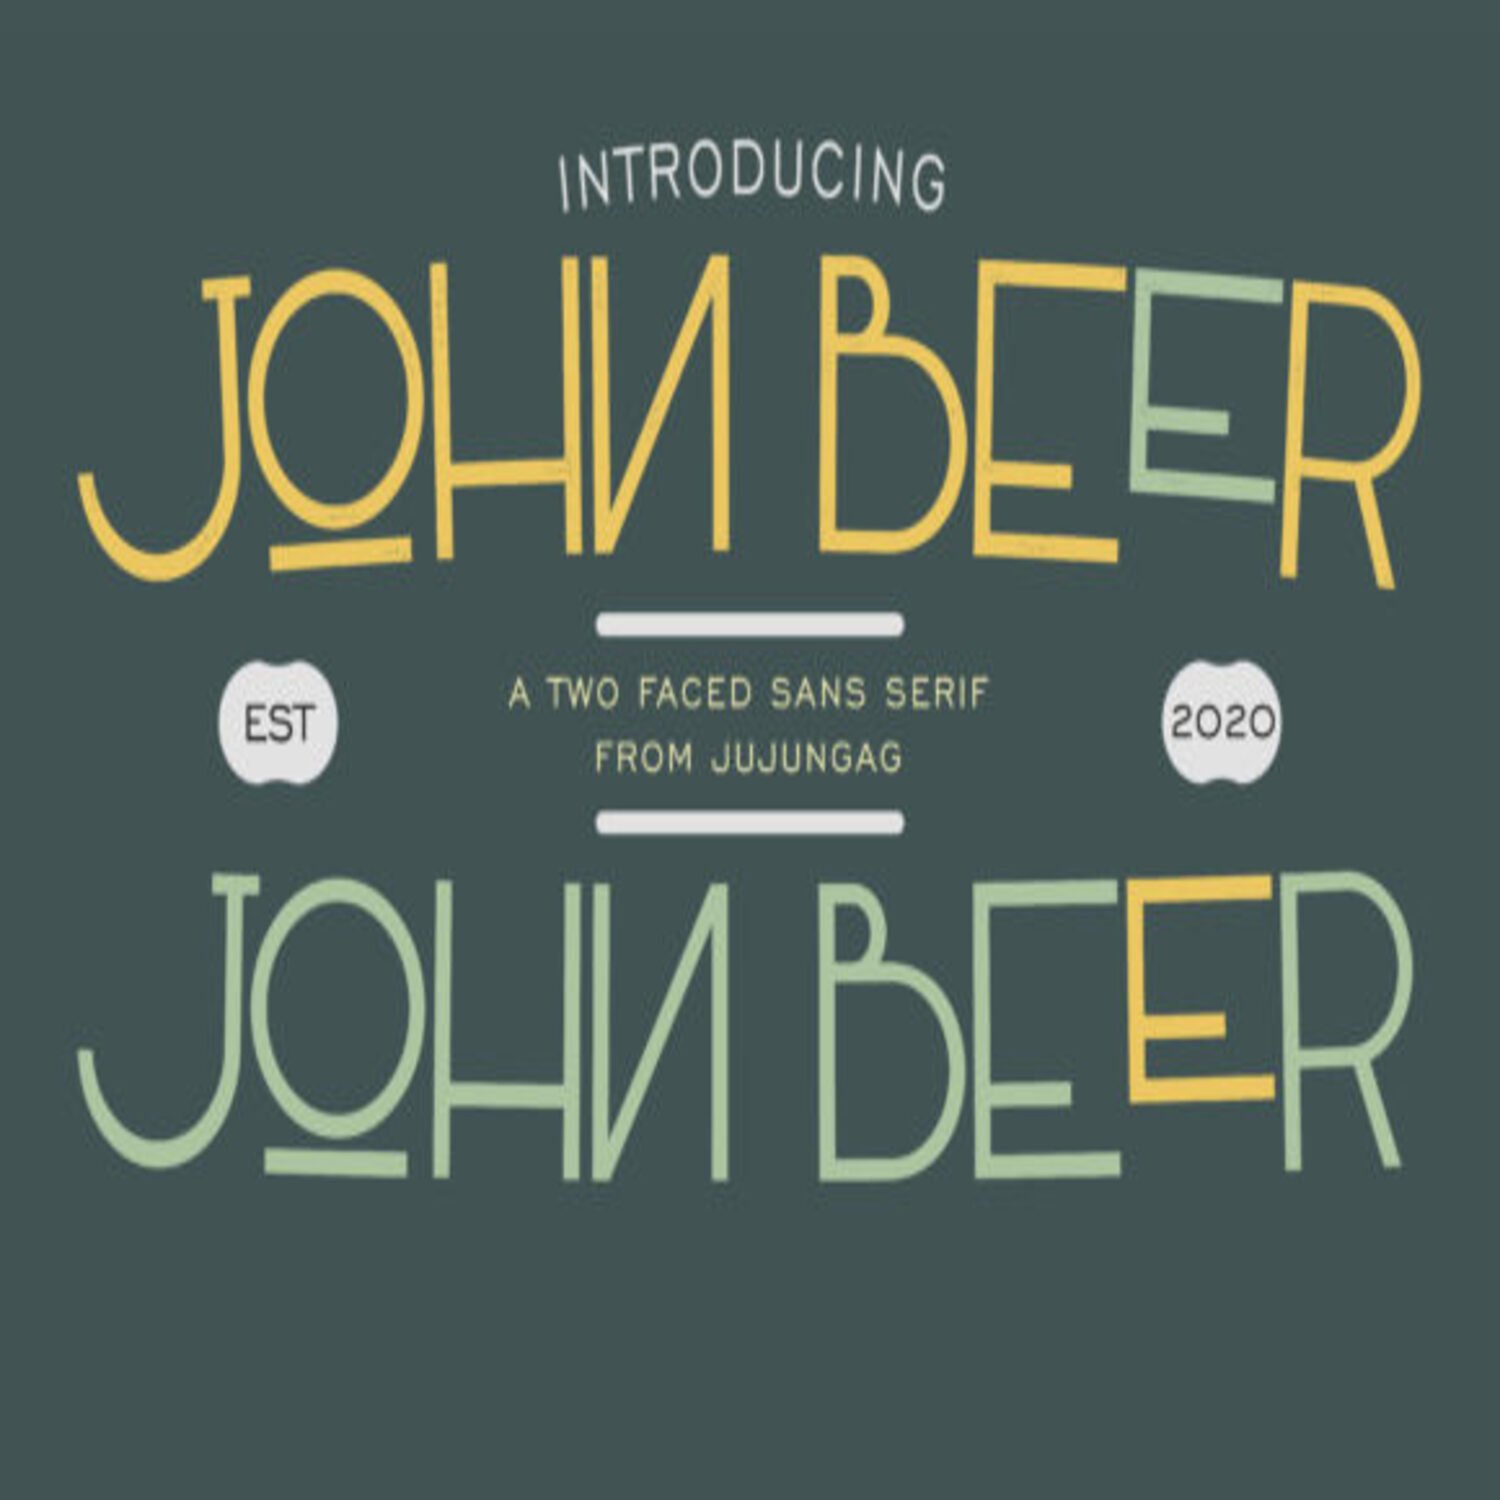 John Beer Fonts main cover.